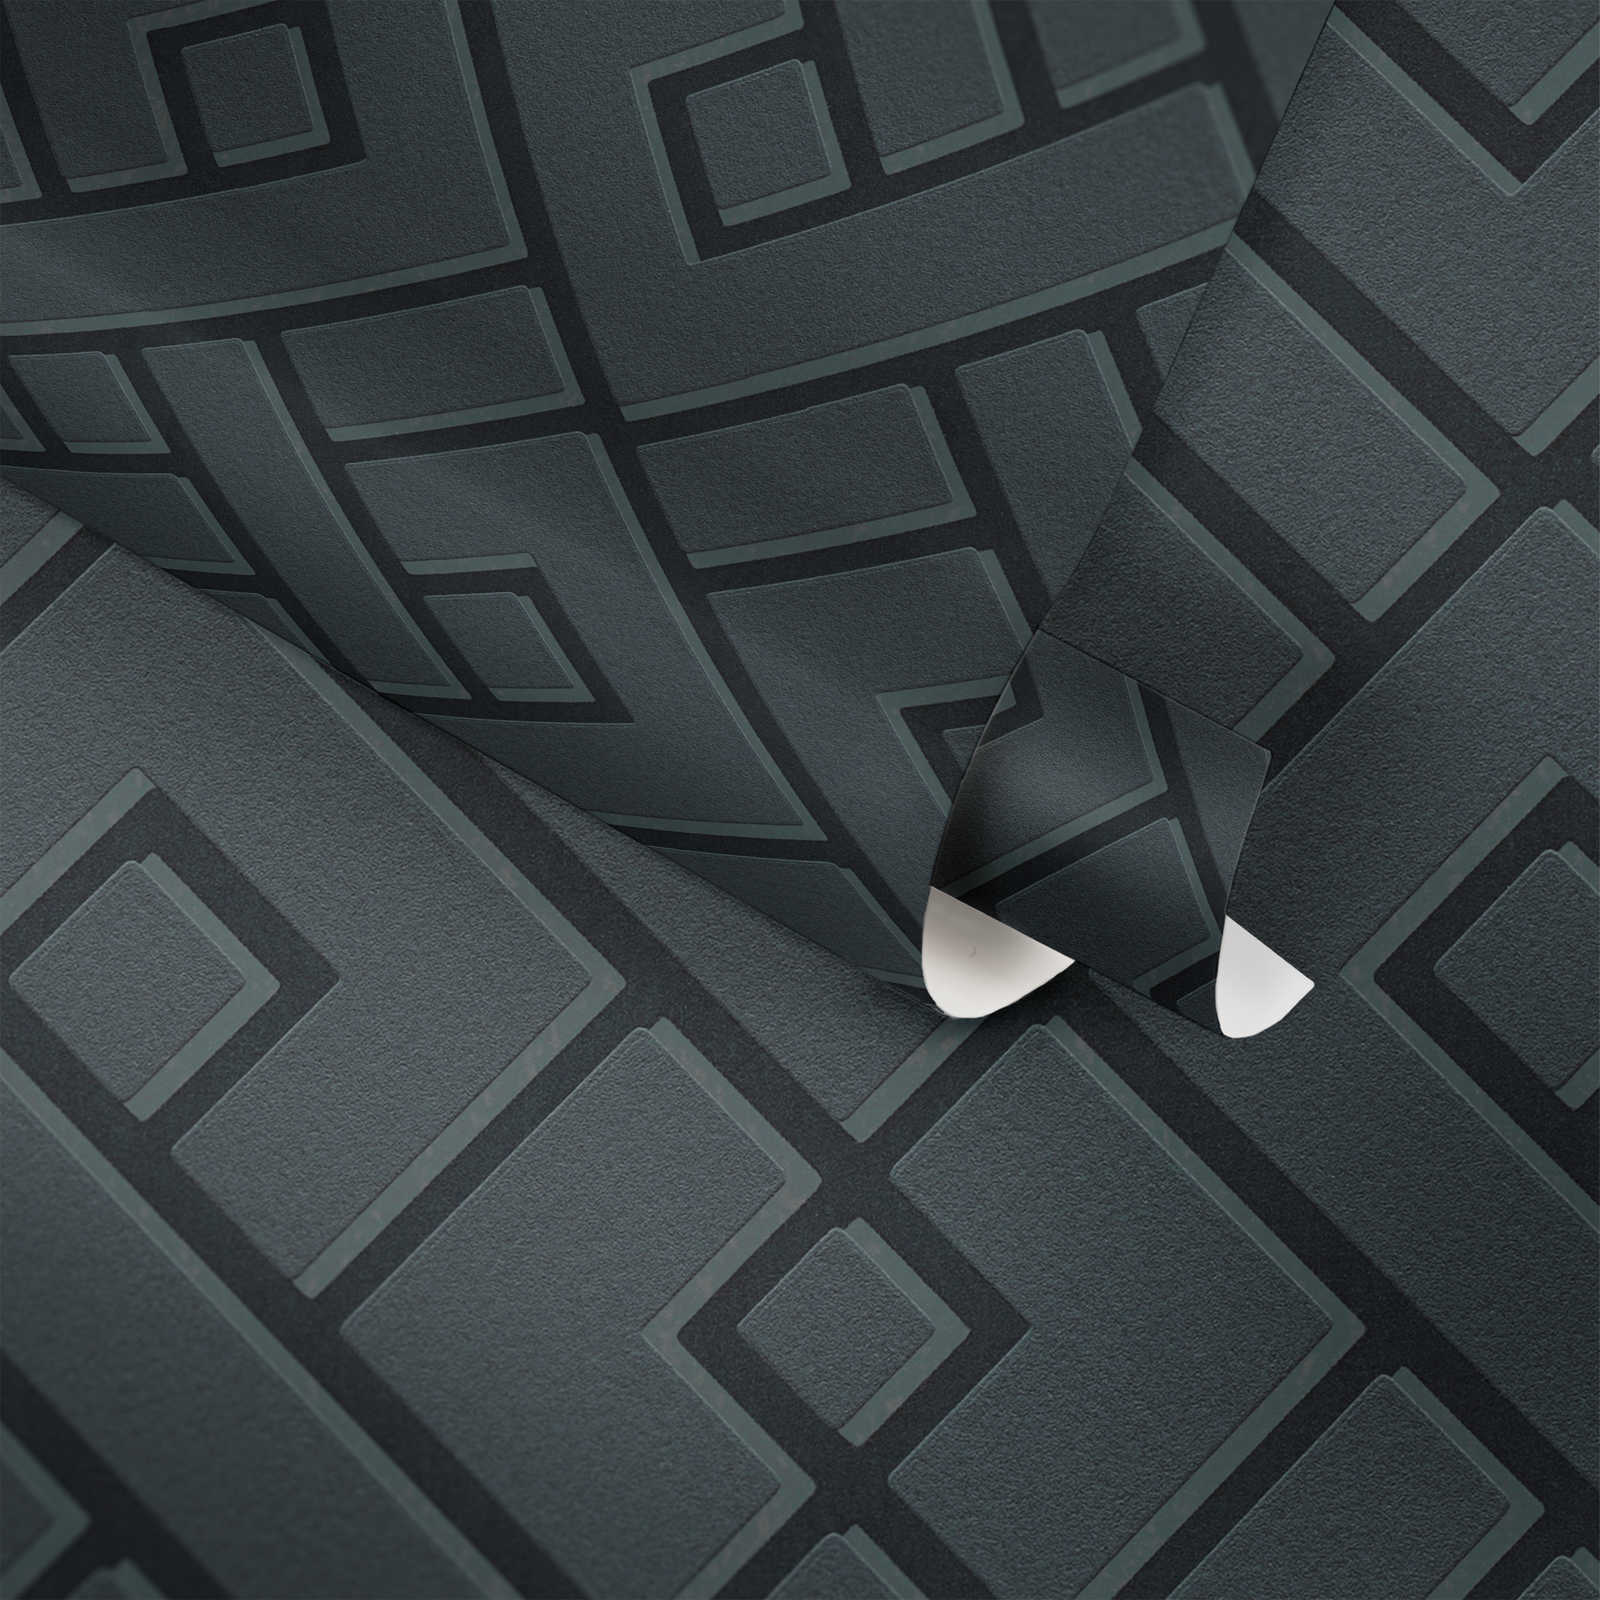             MICHALSKY behang zwart met 3D patroon & mat-glanseffect
        